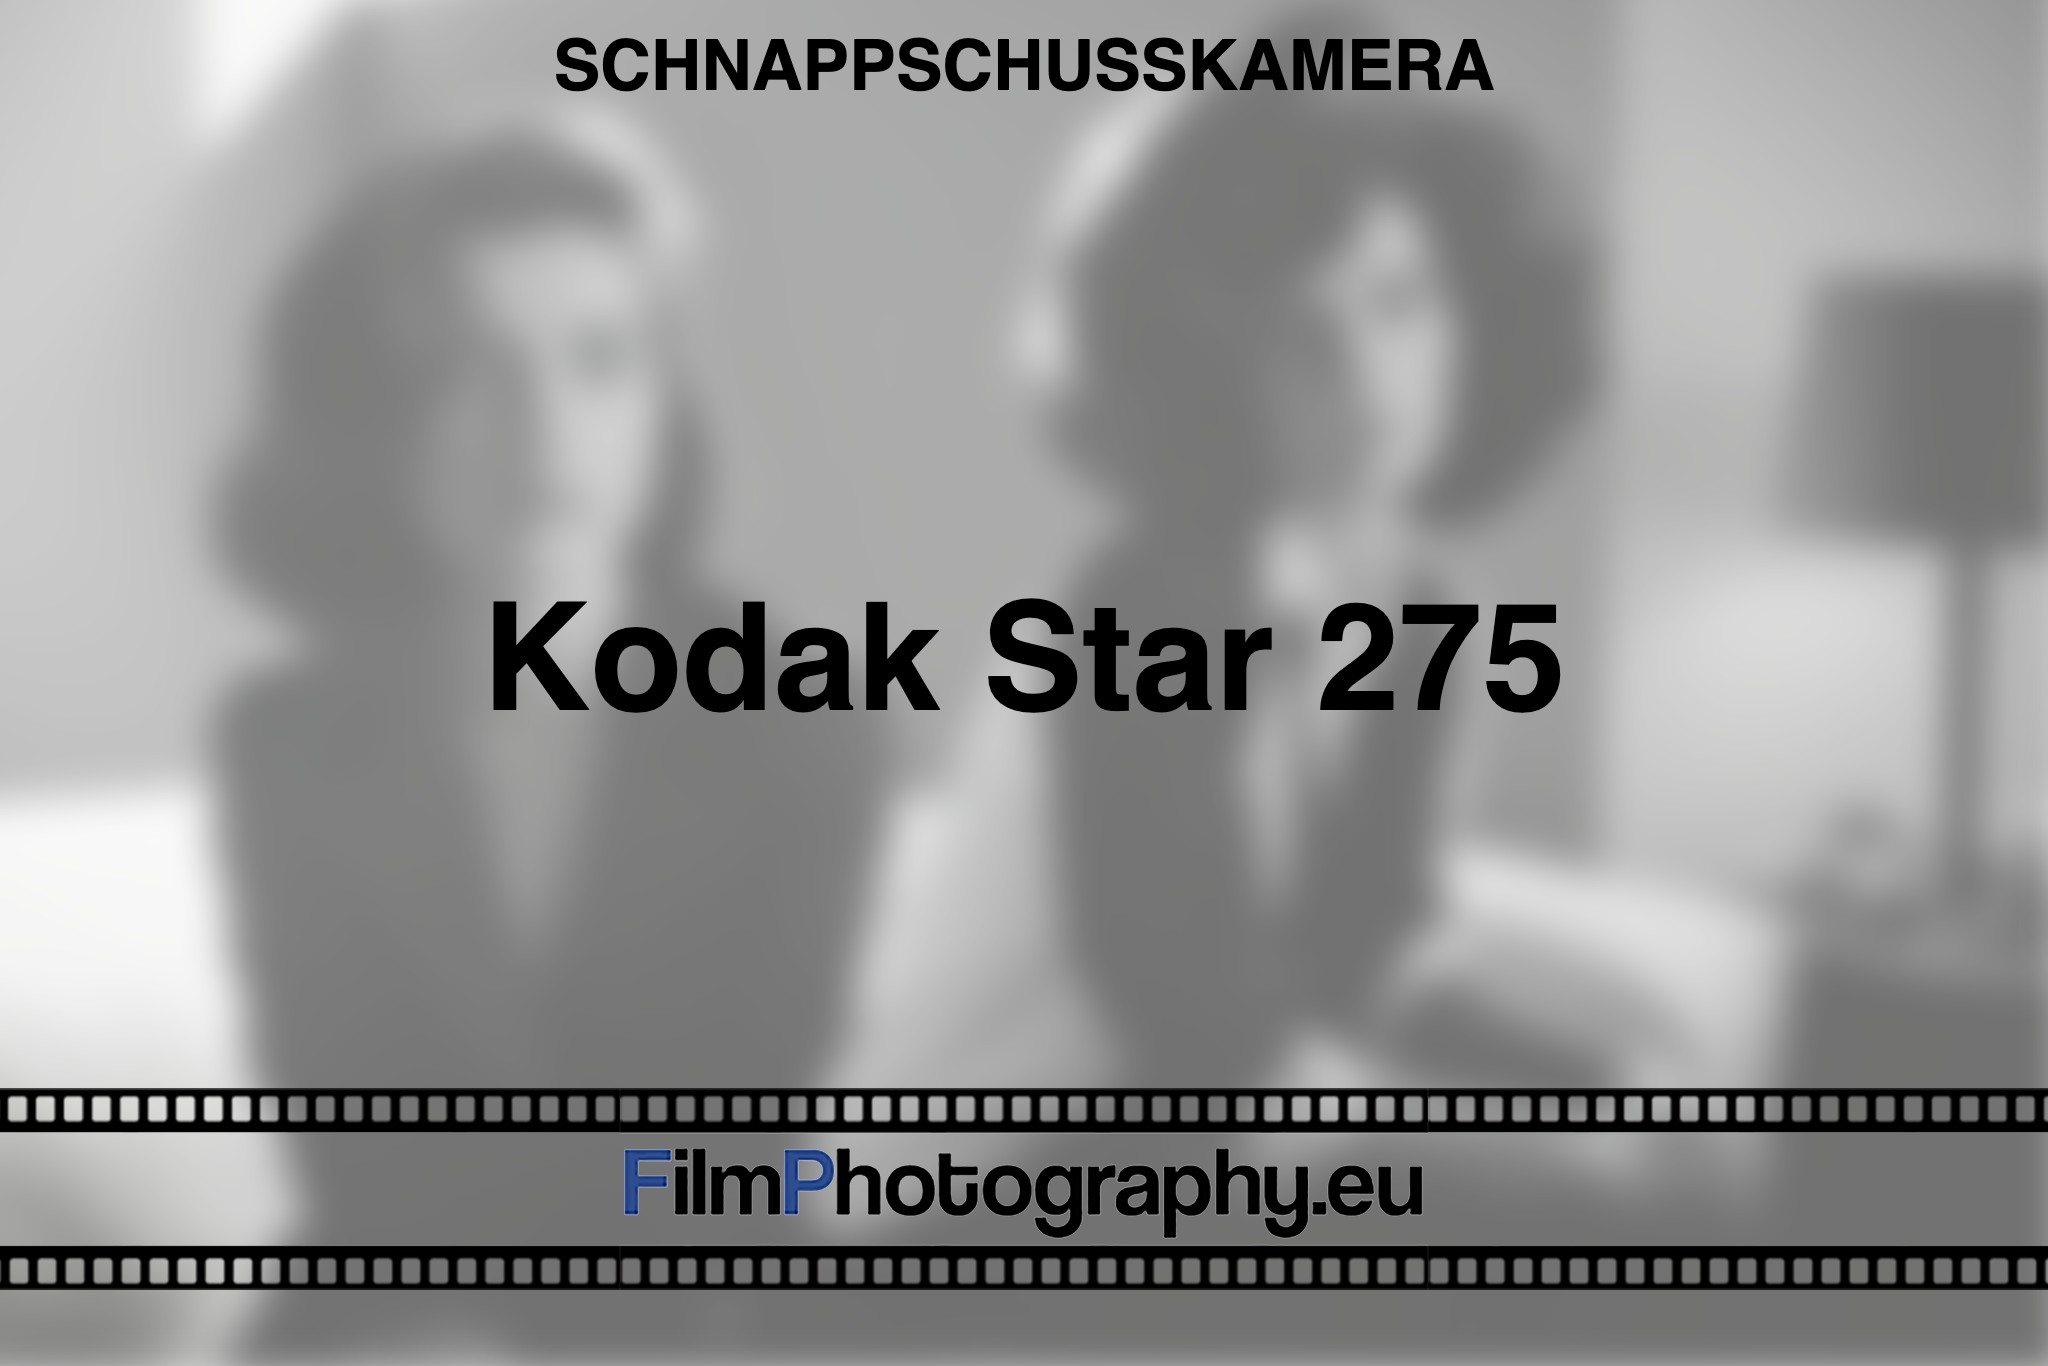 kodak-star-275-schnappschusskamera-bnv